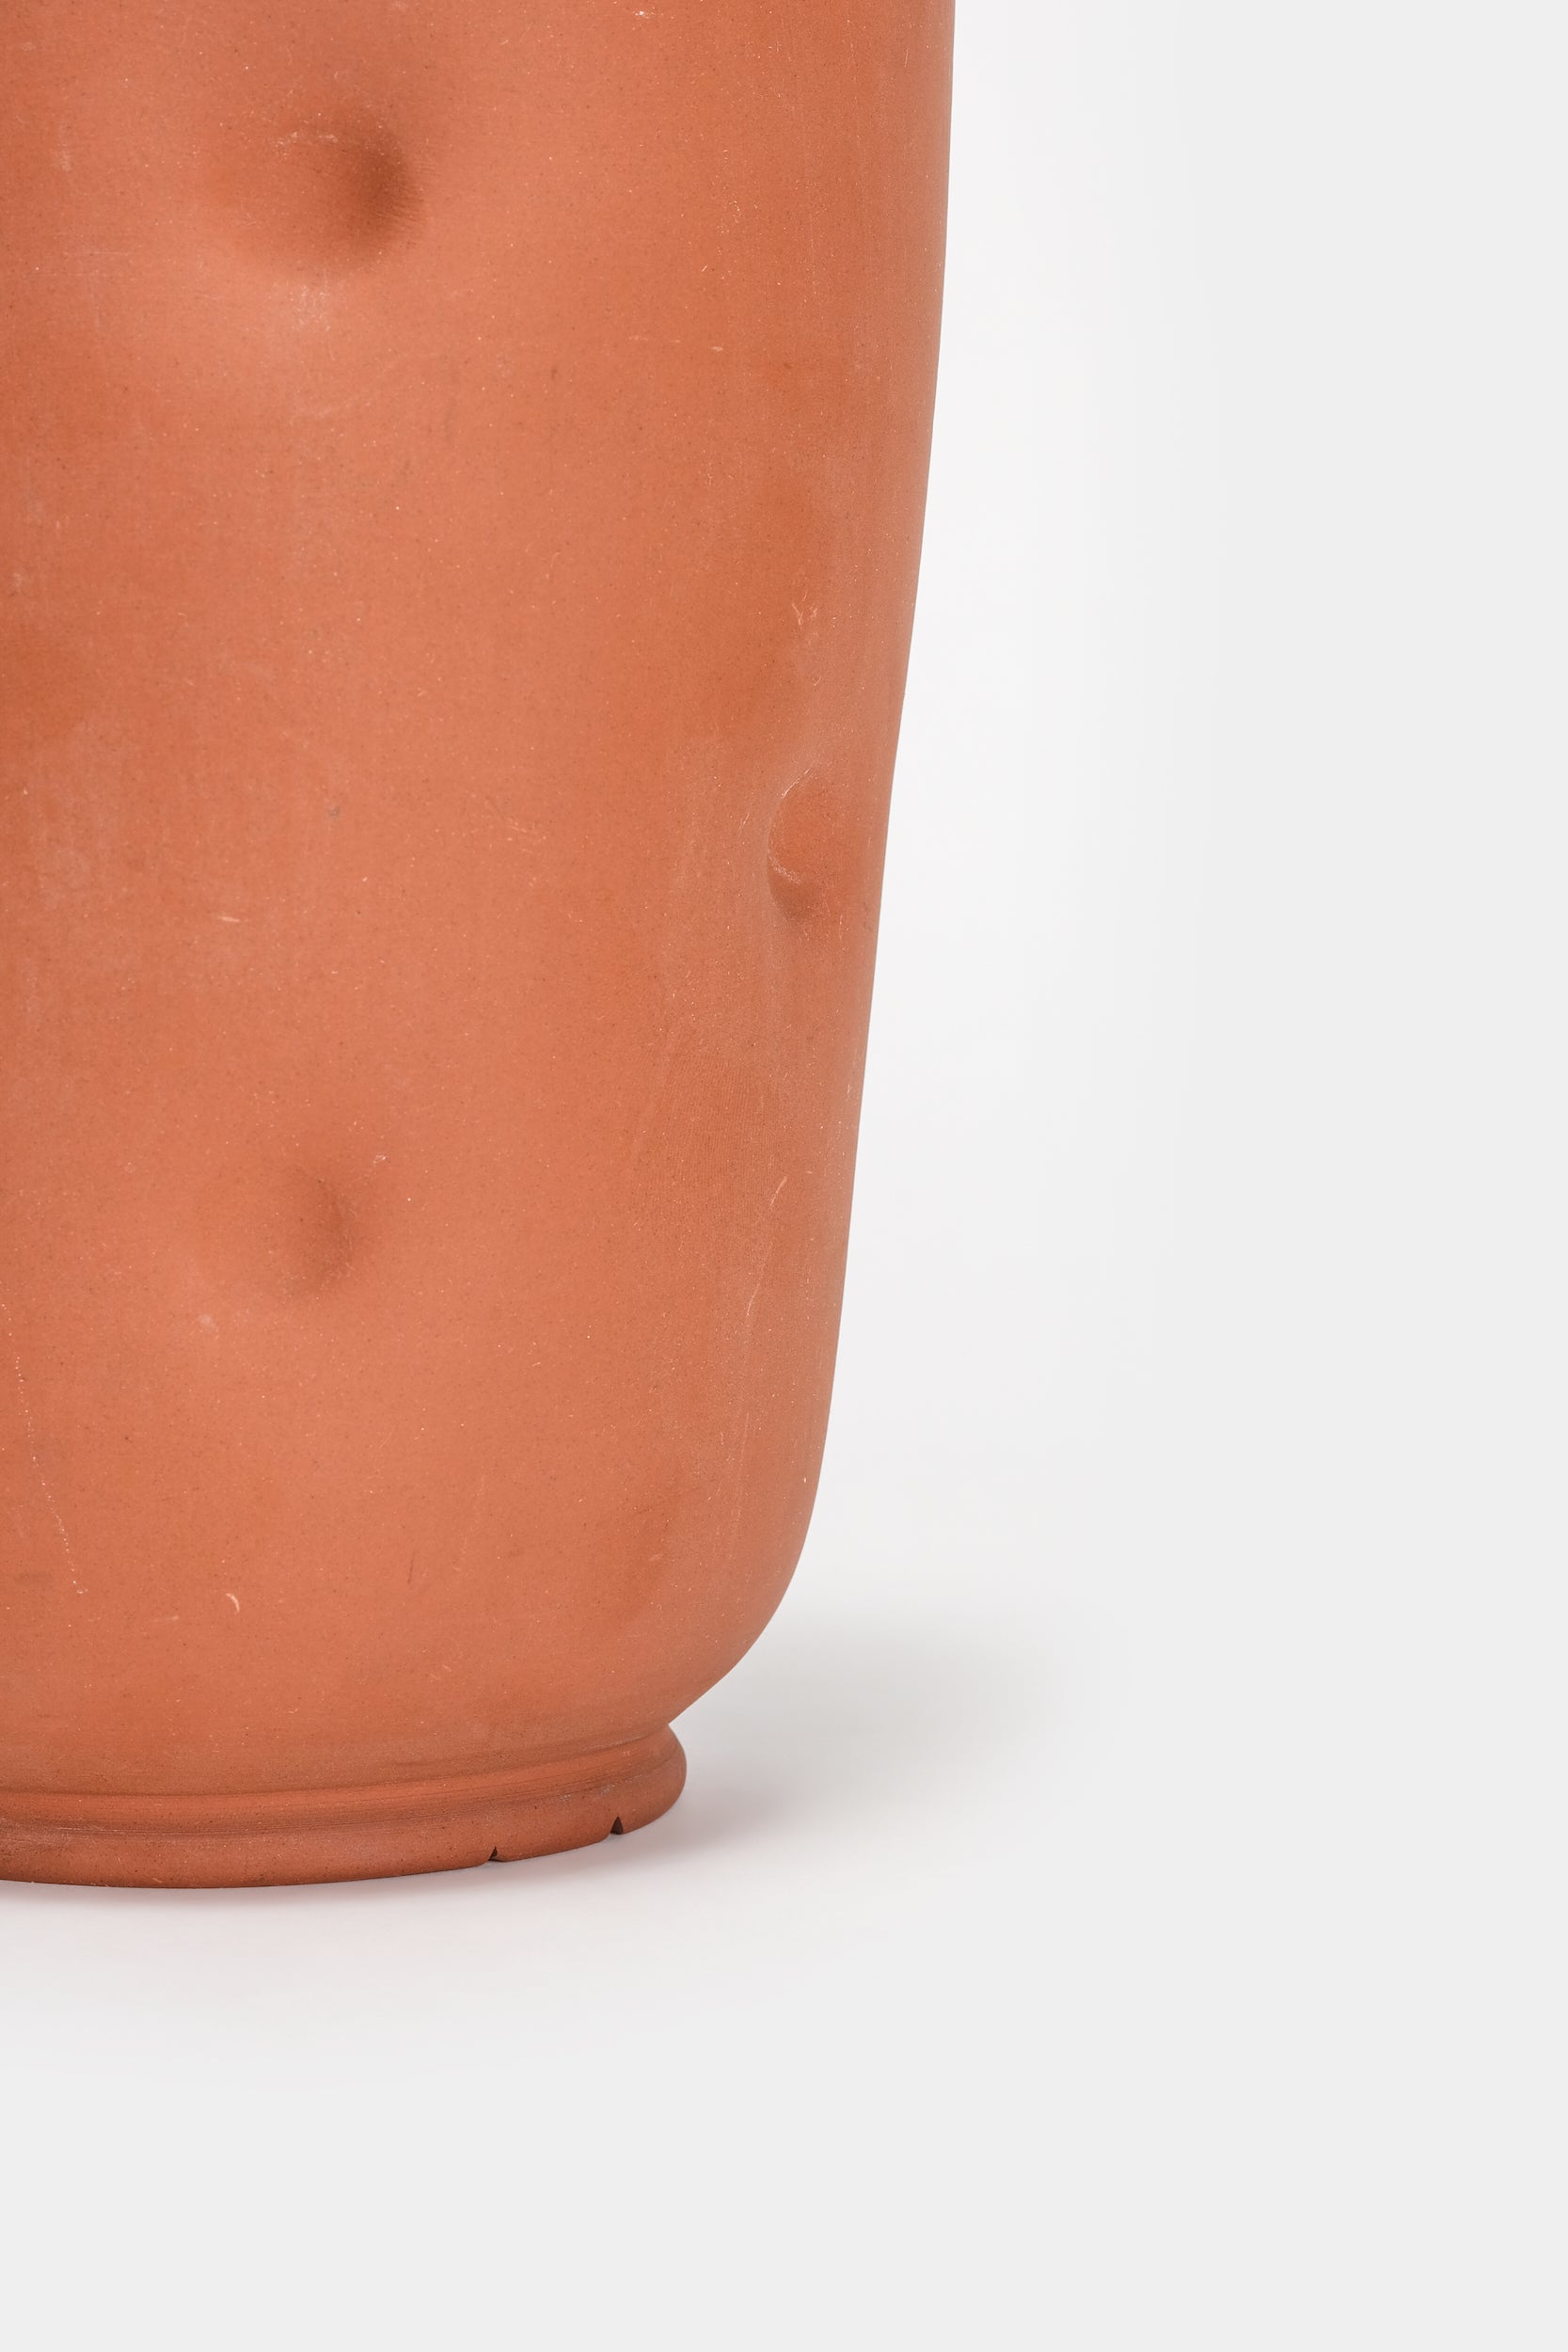 Grosse Terracotta Vase, 50er